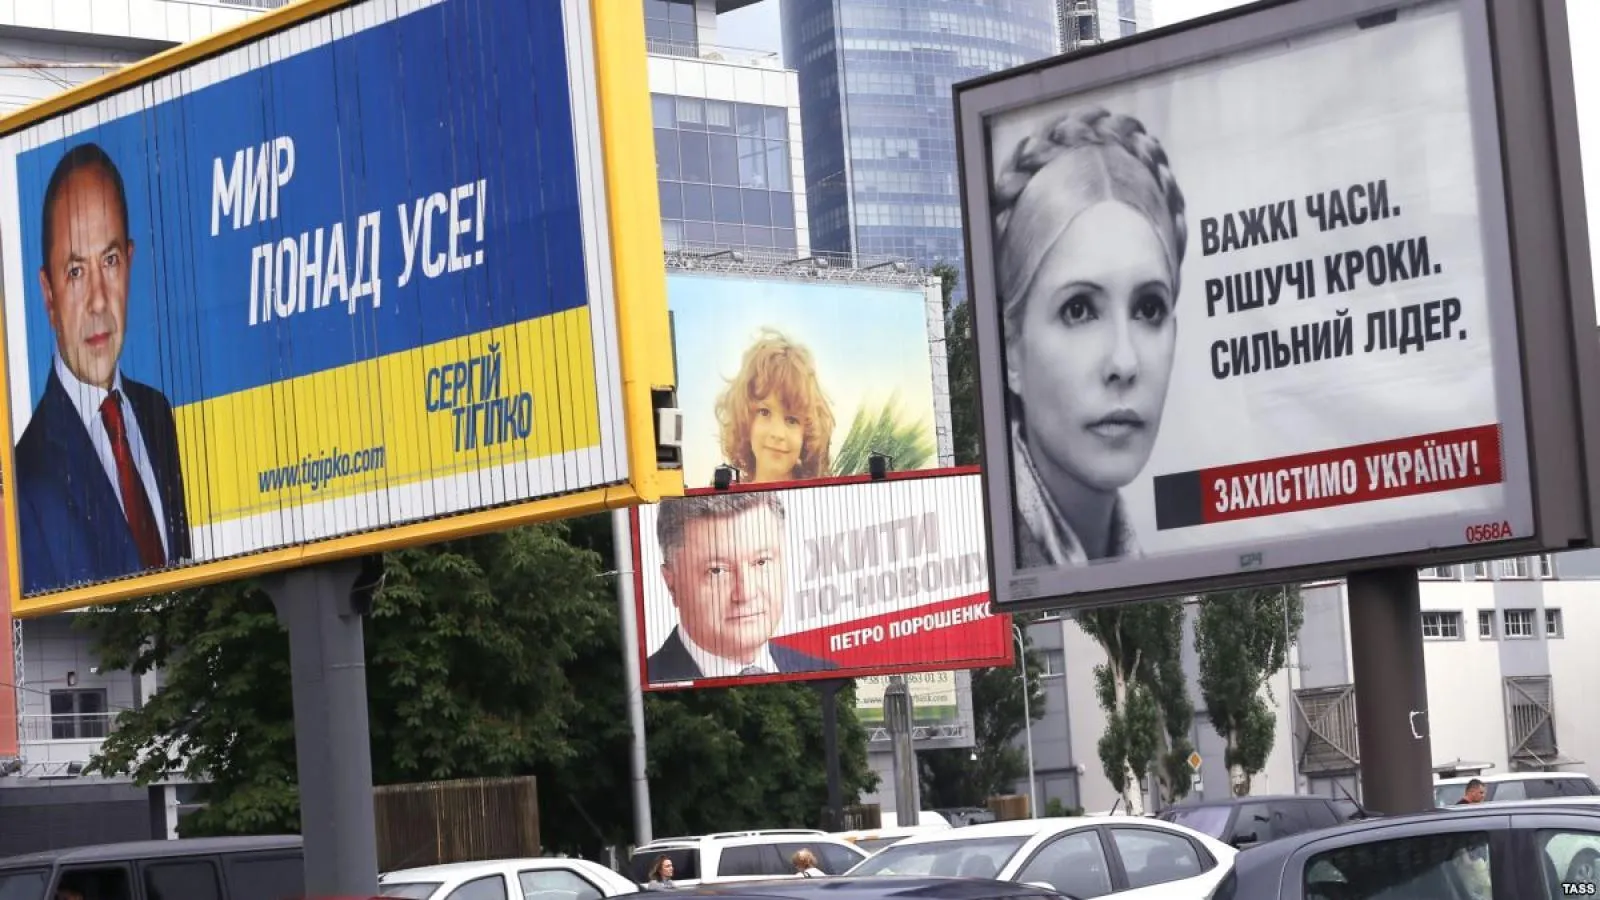 Політична реклама в Україні під час президентської кампанії 2014 року